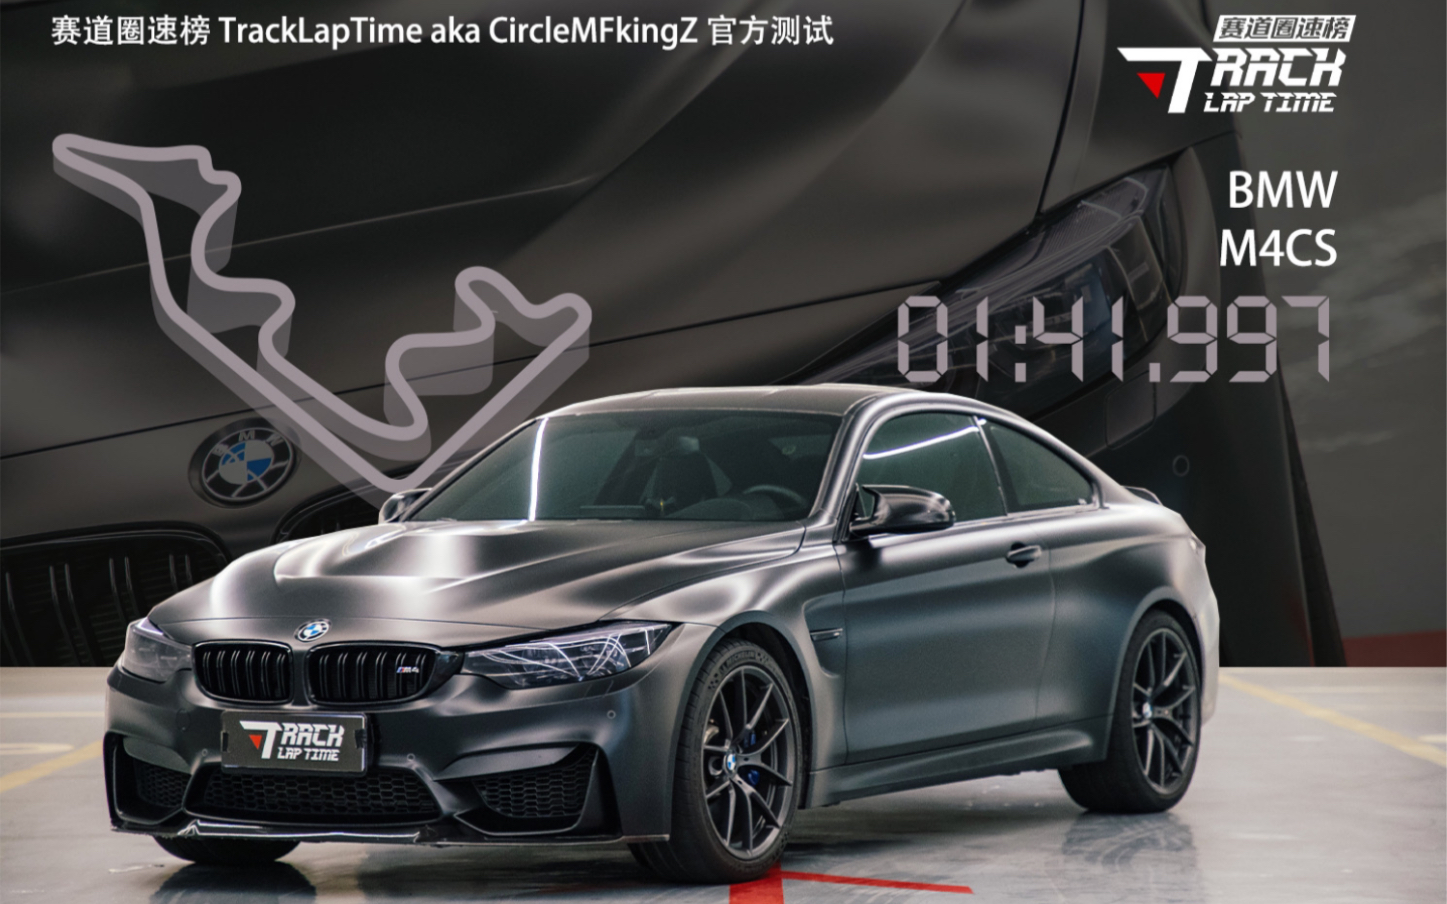 不特别中的特别 赛道圈速榜 浙江国际赛车场@BMW F82 M4CS 1'41.997